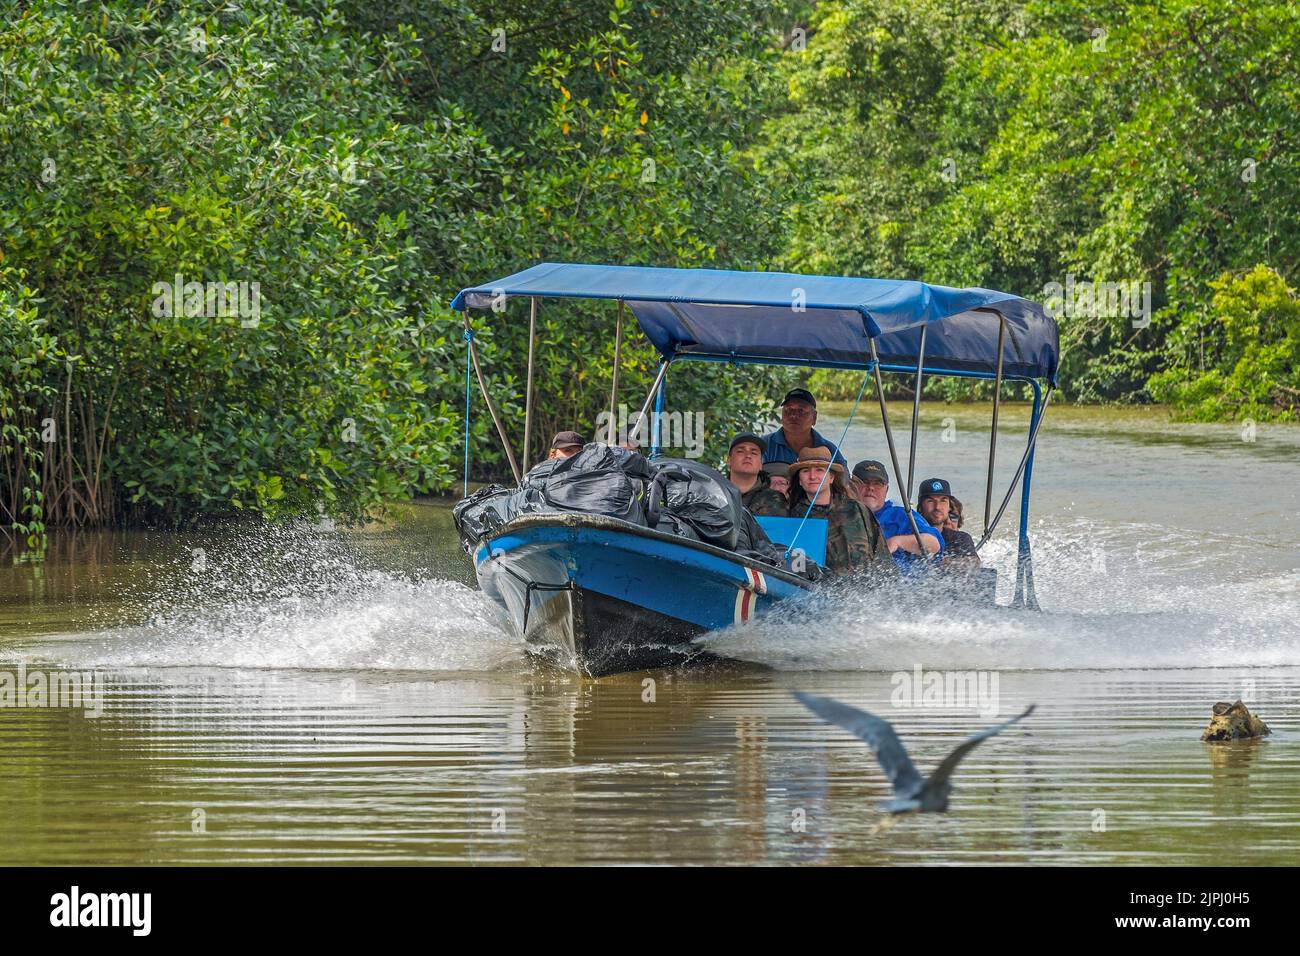 River Boat Cruising The River, Tortuguero canals Area, Costa Rica, Central America Stock Photo